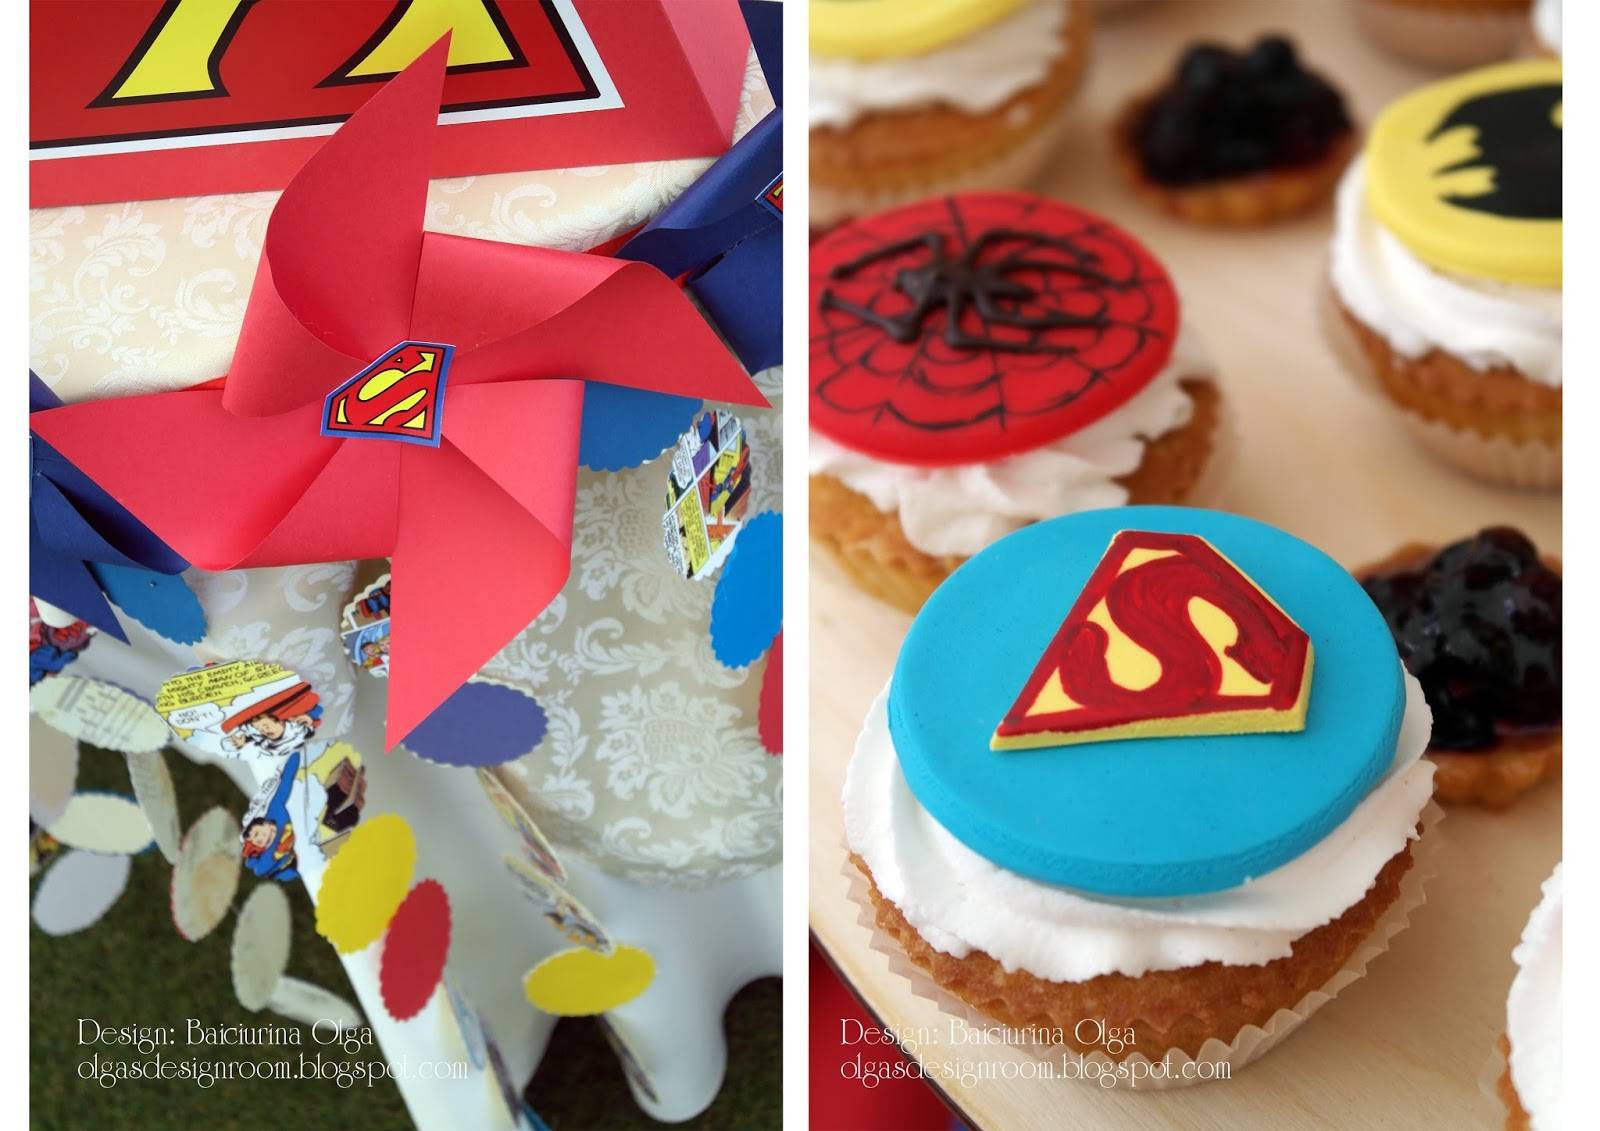 День рождения в стиле супергероев для всех. детский день рождения в стиле супергероев! разовая игровая программа